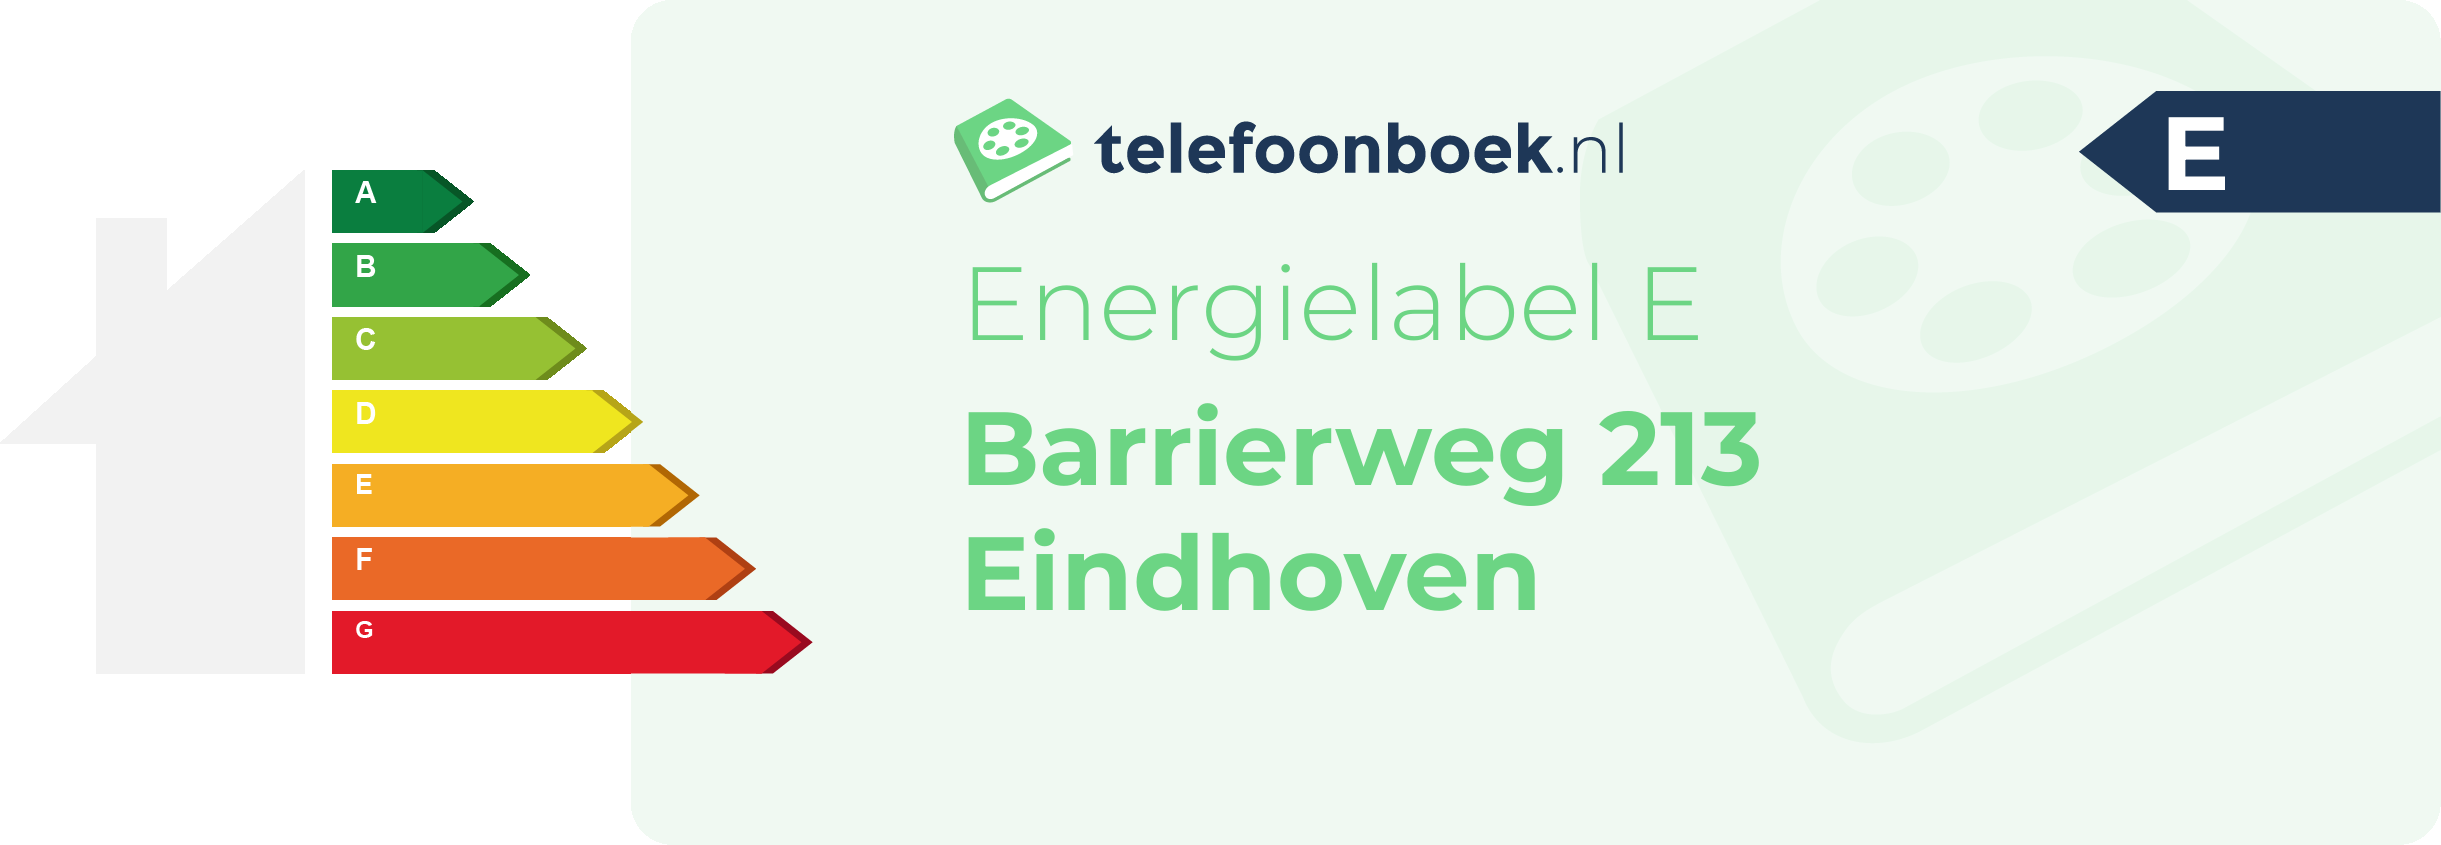 Energielabel Barrierweg 213 Eindhoven